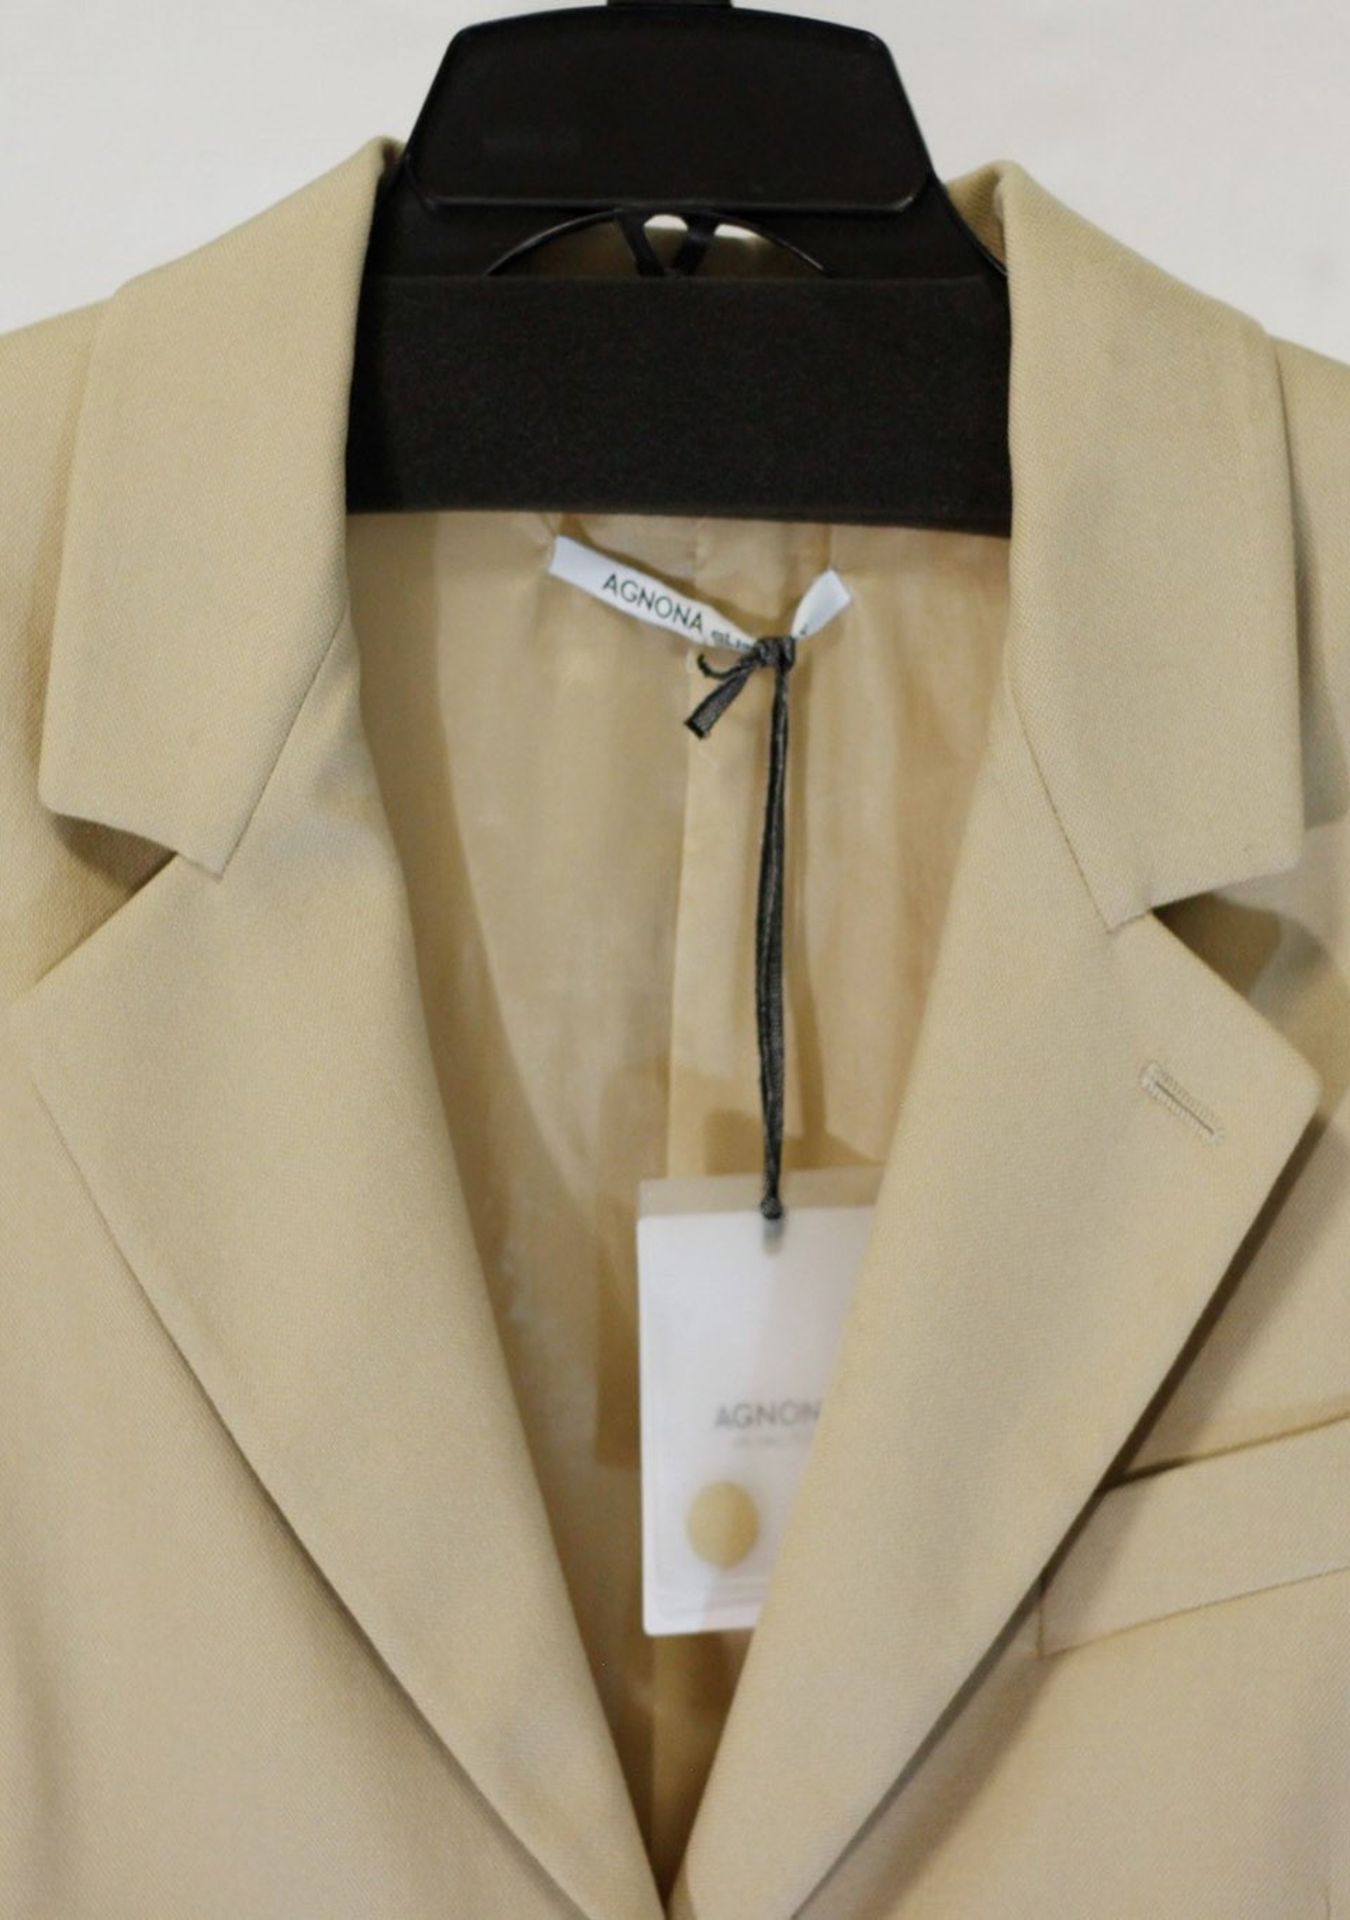 1 x Agnona Beige Jacket - Size: 20 - Material: 98% Cotton, 2% Nylon, 2% Elastane. Lining 85% - Image 8 of 10